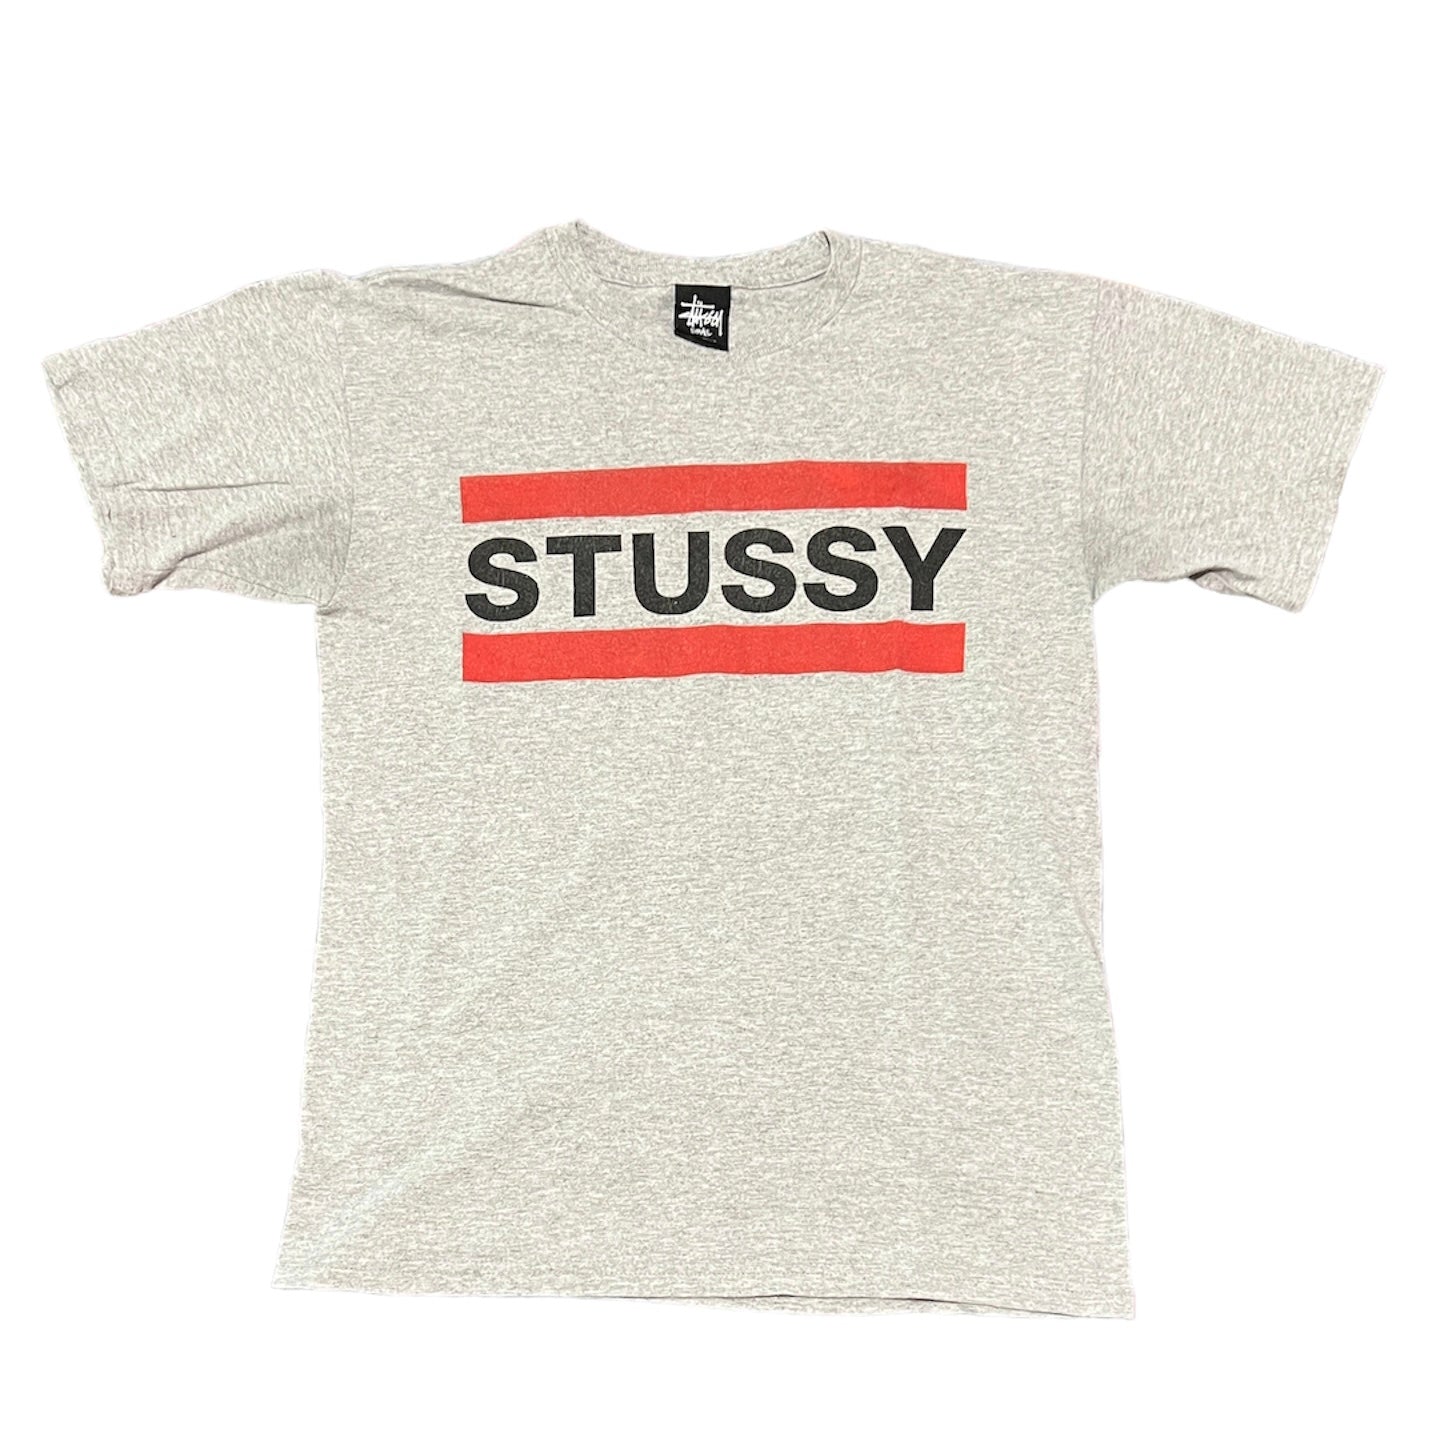 Stussy T-Shirt Size Small